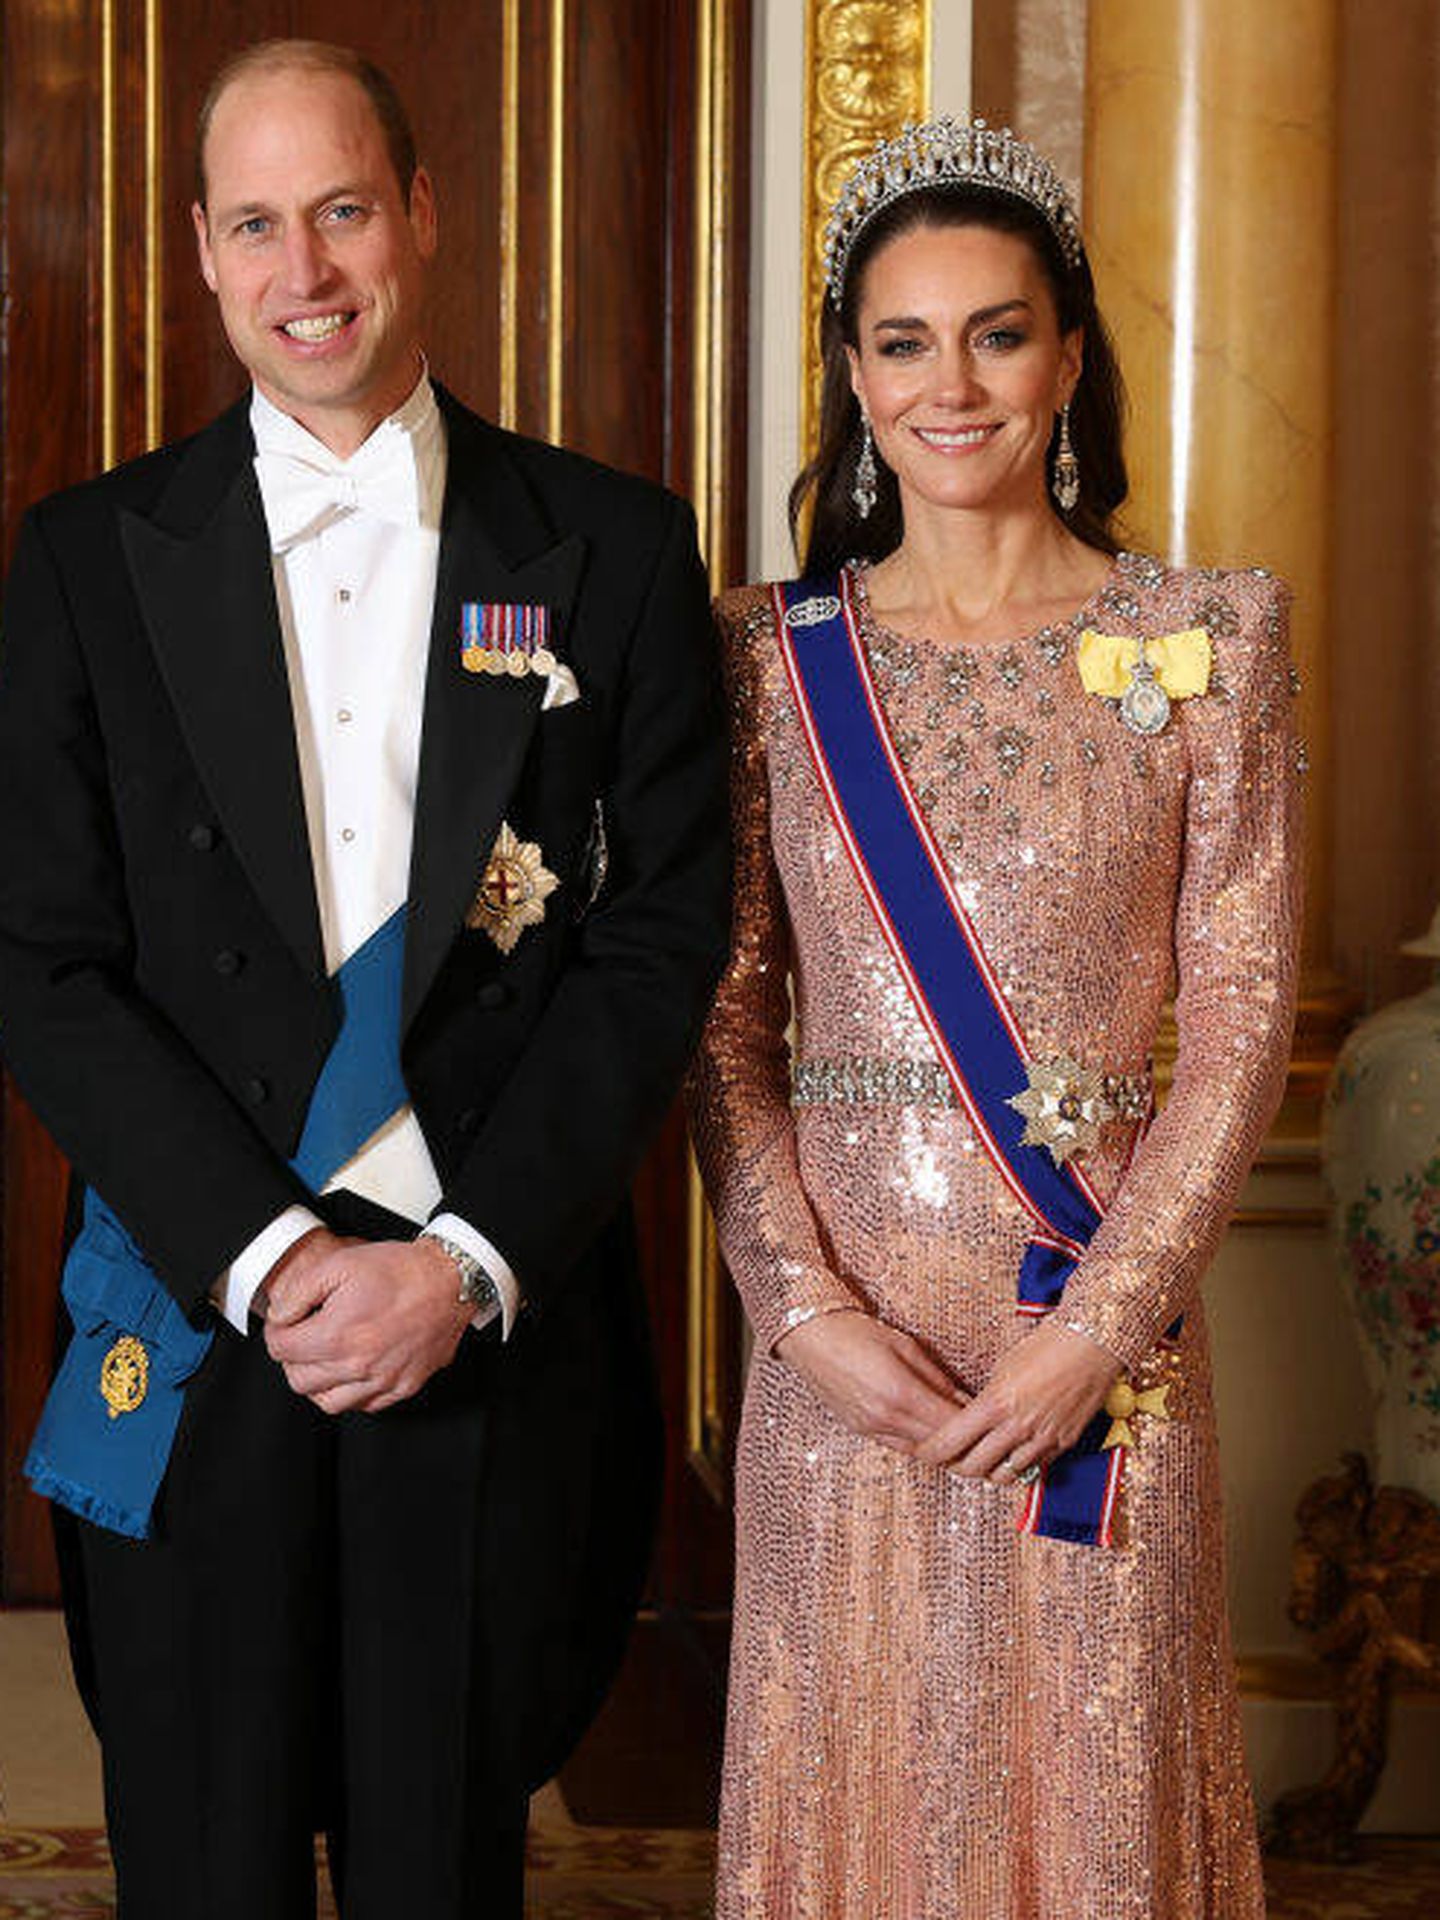 El look de Kate Middleton para acudir a la tradicional cena de recepción diplomática en Buckingham Palace. (Getty Images)